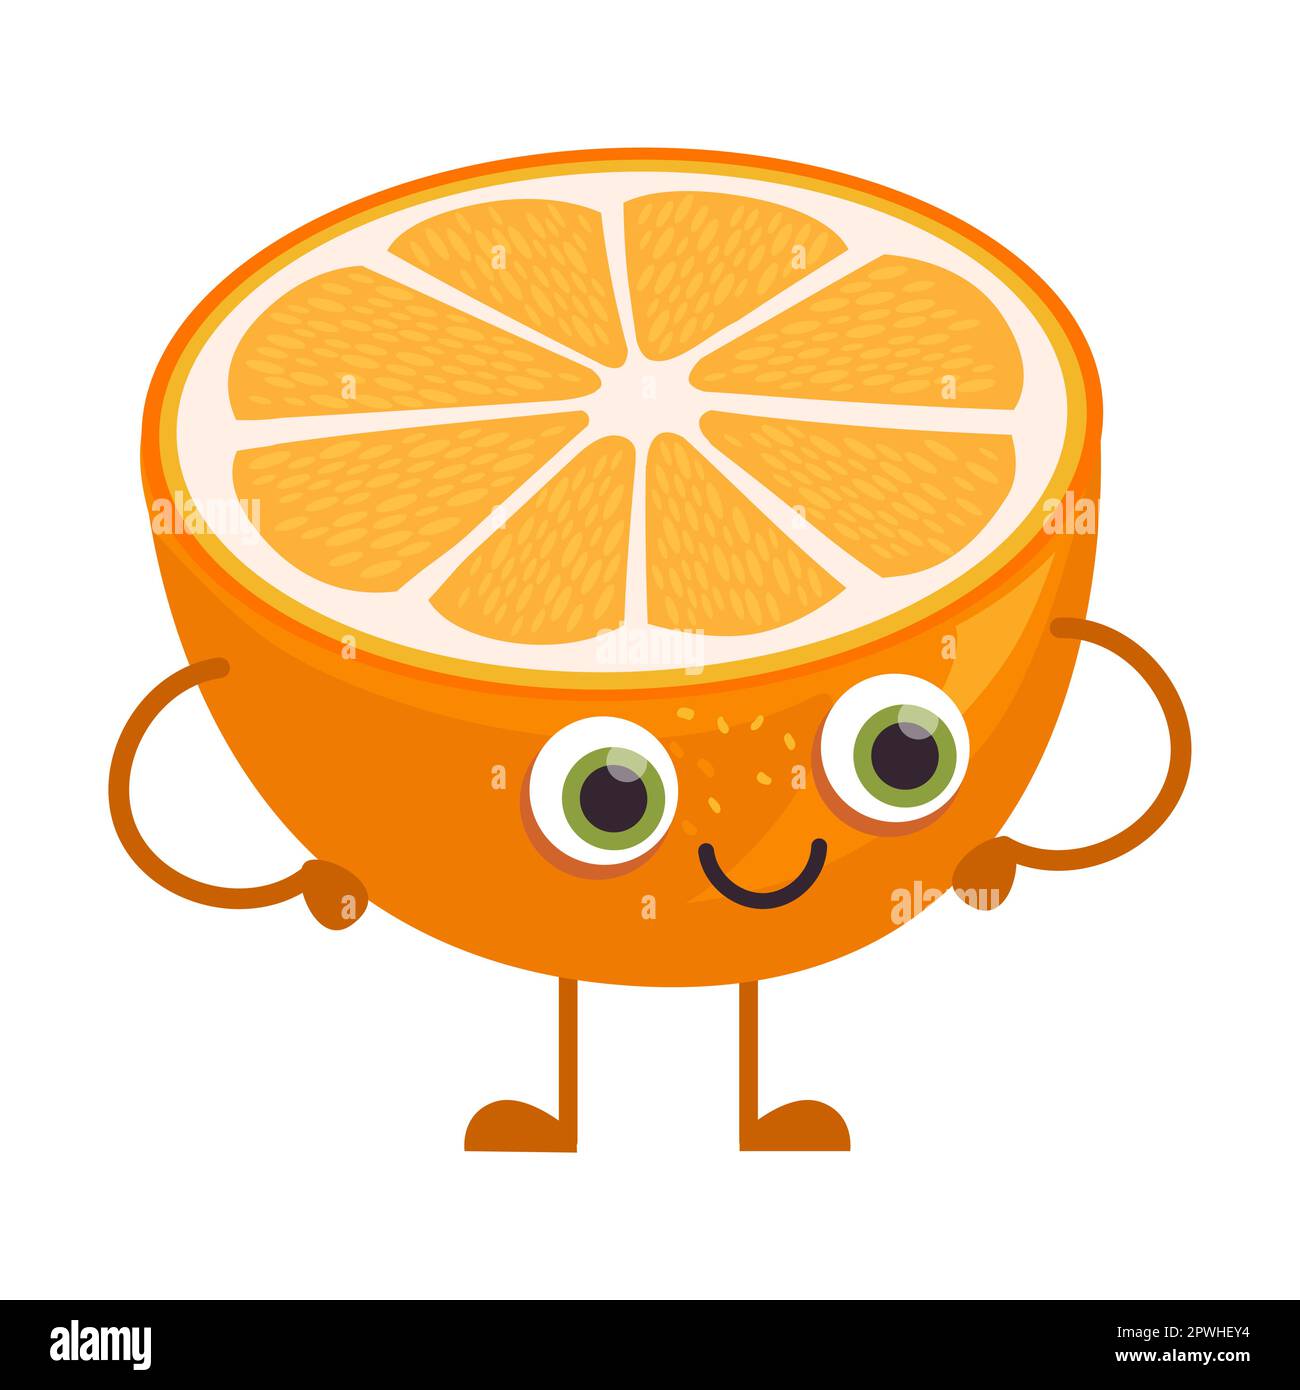 Illustration vectorielle de personnage de dessin animé orange mûr mignon. Autocollant comique avec caricature drôle de personnage heureux isolé sur blanc Illustration de Vecteur